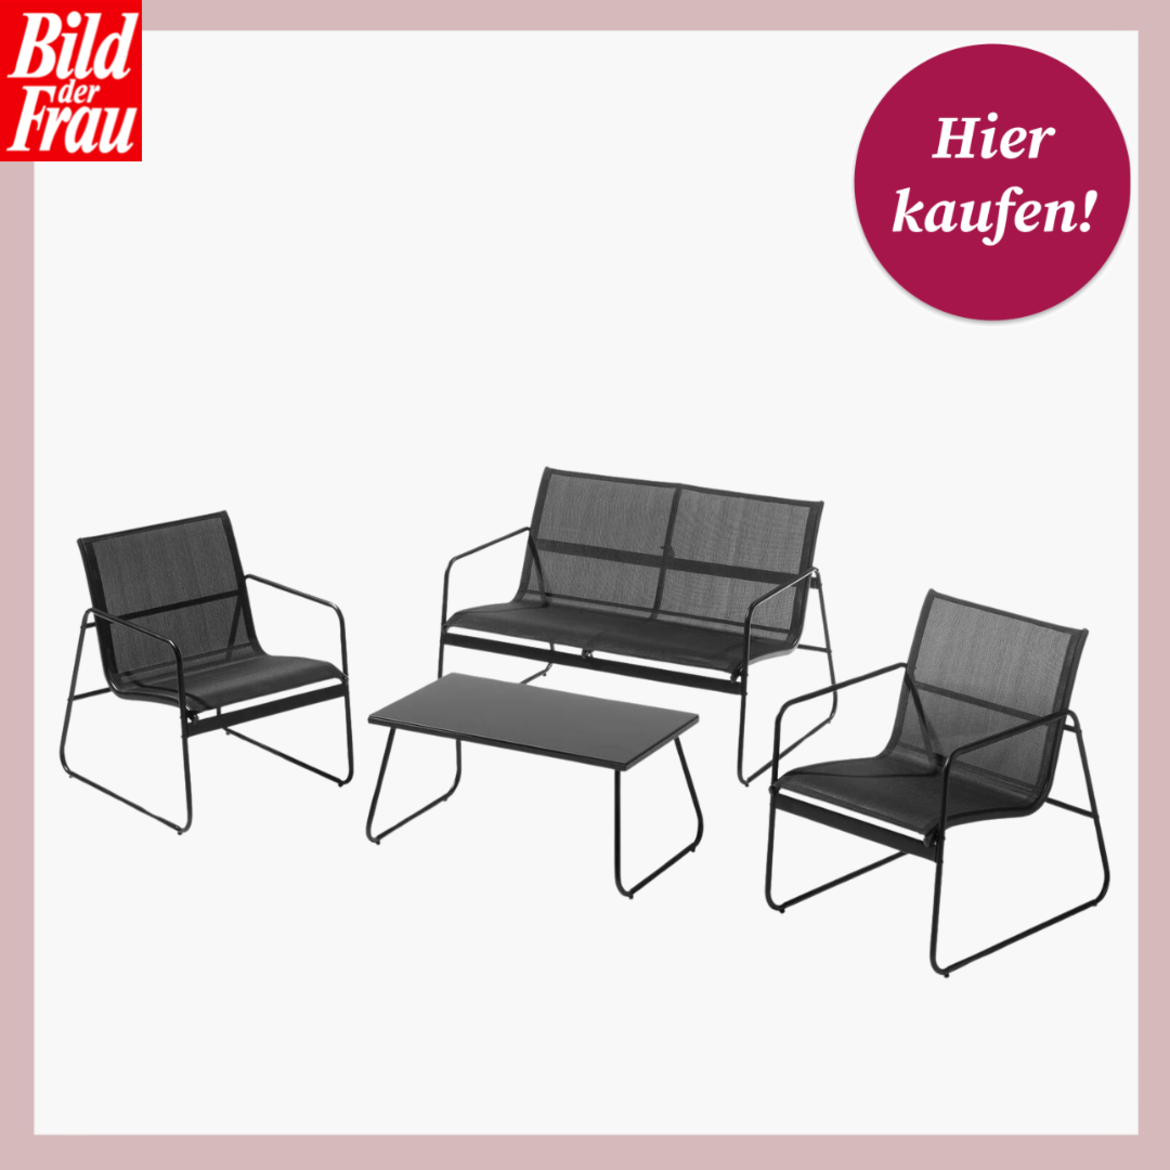 Moderne Gartenmöbel: Zwei schwarze Stühle, eine Bank und ein Tisch auf hellem Untergrund. | © Lidl 